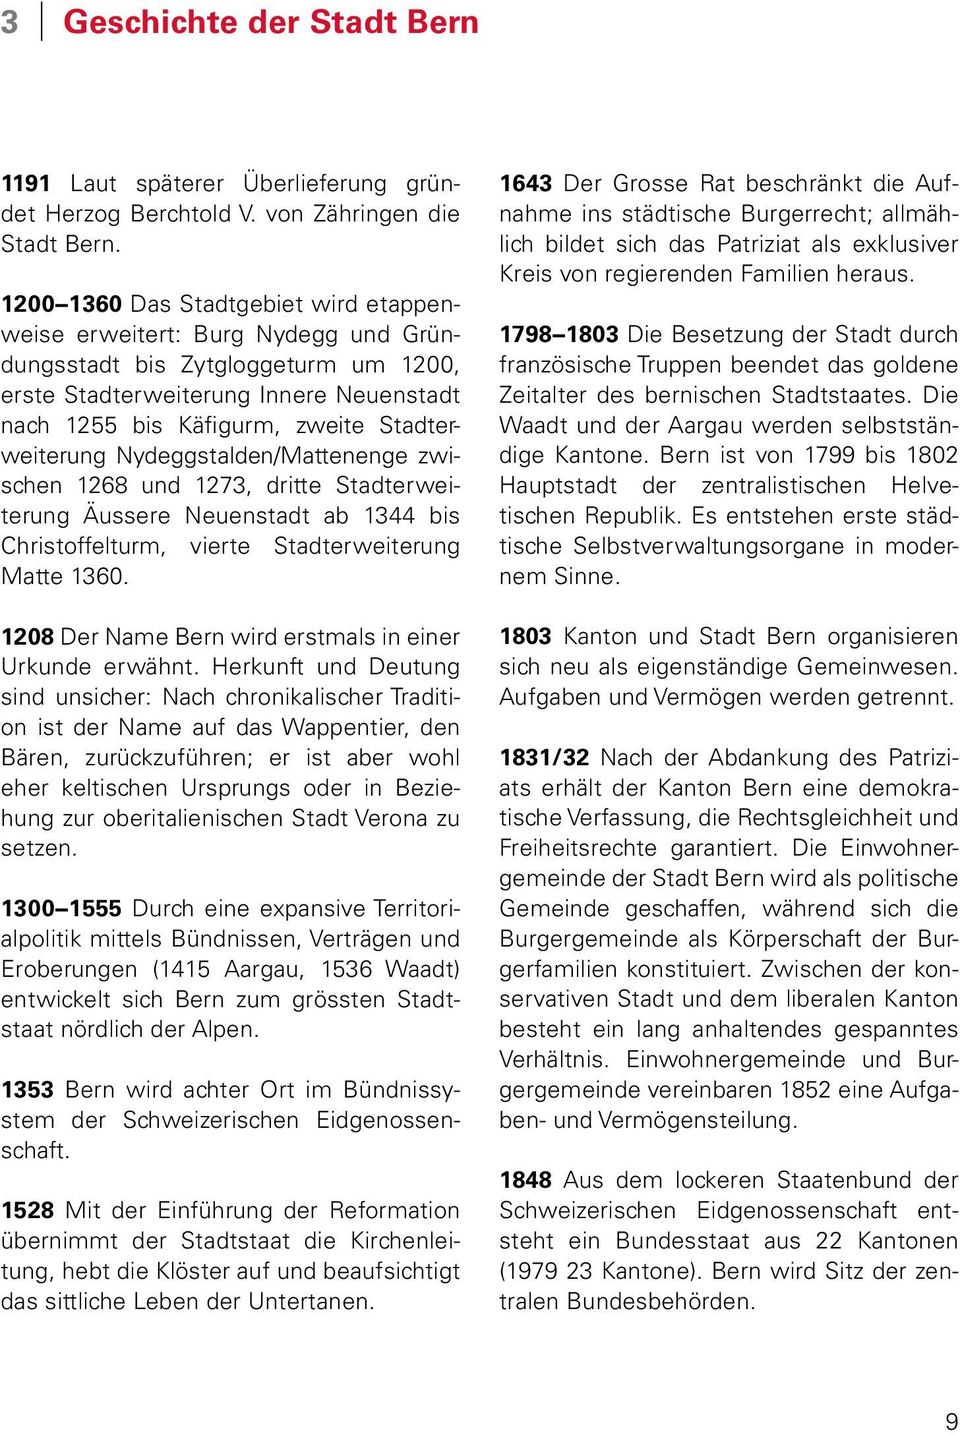 Stadterweiterung Nydeggstalden/Mattenenge zwischen 1268 und 1273, dritte Stadterweiterung Äussere Neuenstadt ab 1344 bis Christoffelturm, vierte Stadterweiterung Matte 1360.